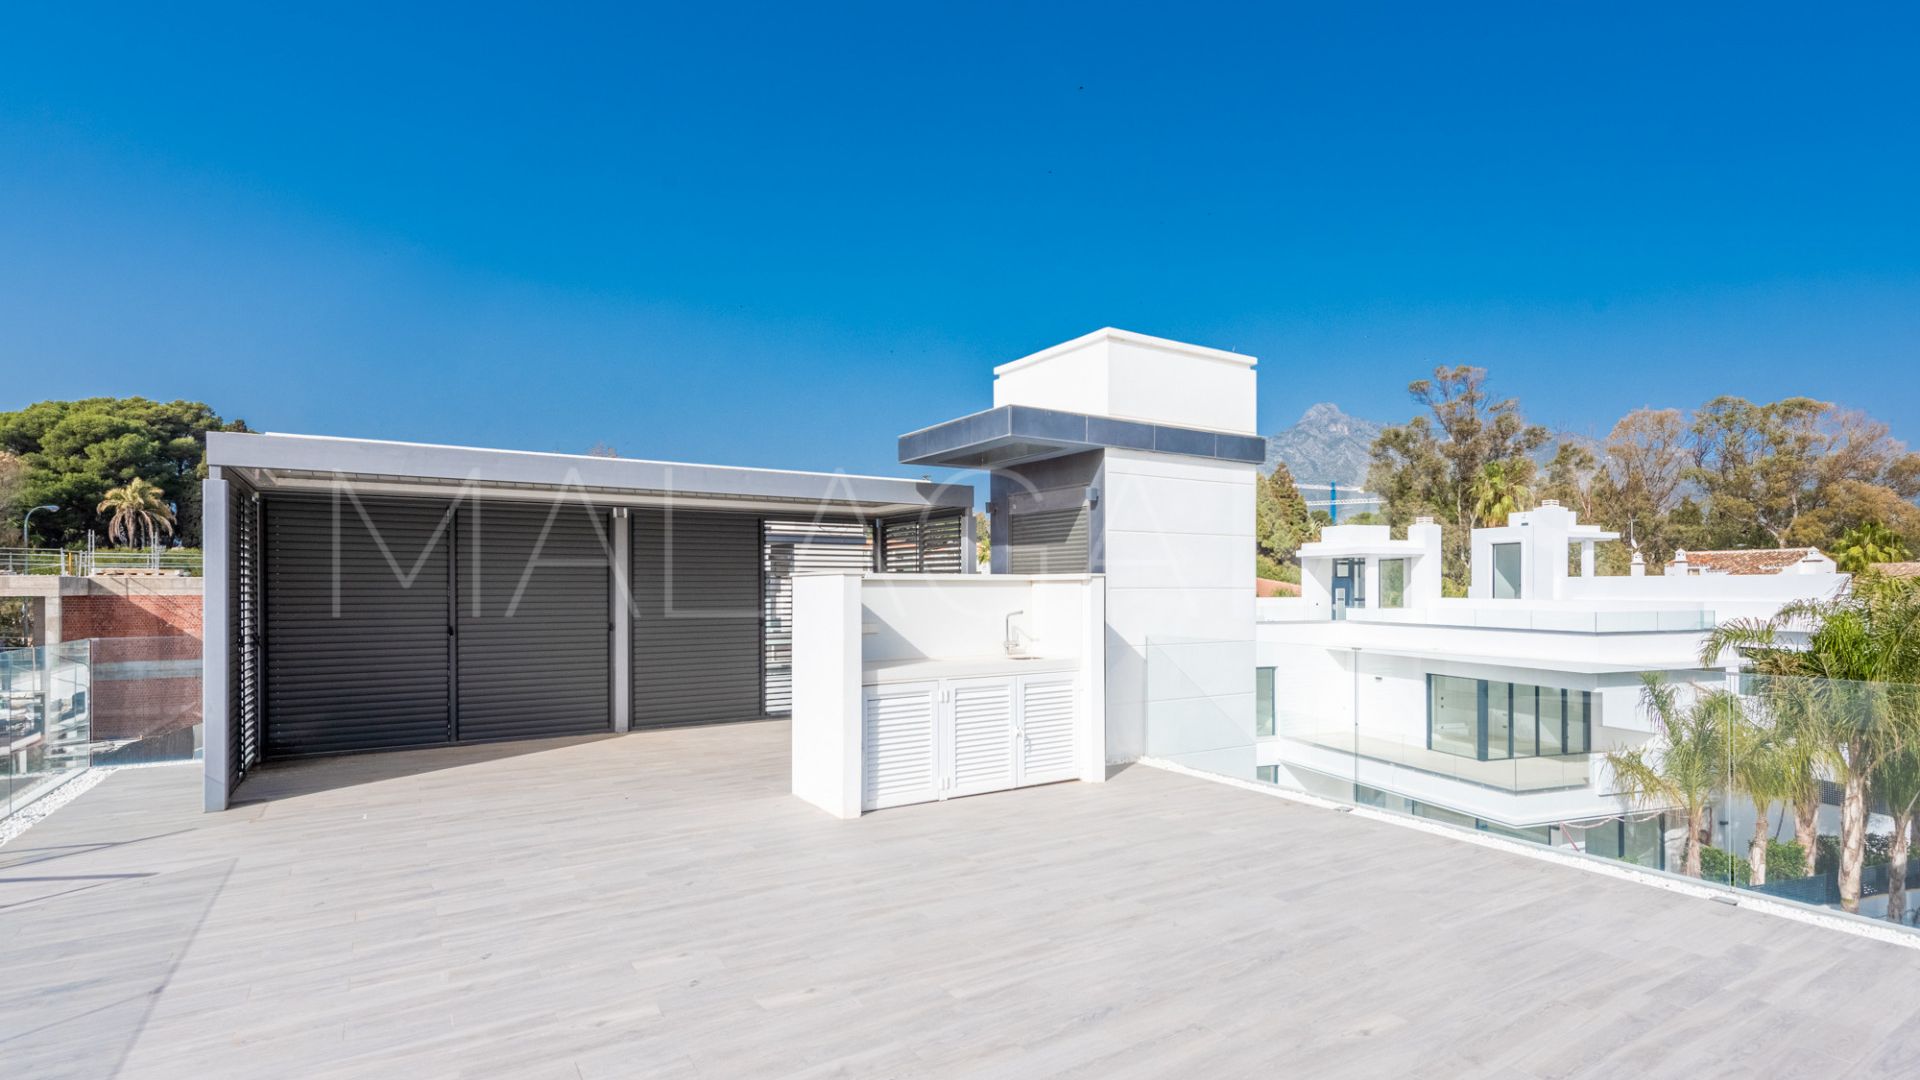 Villa for sale in Rio Verde Playa